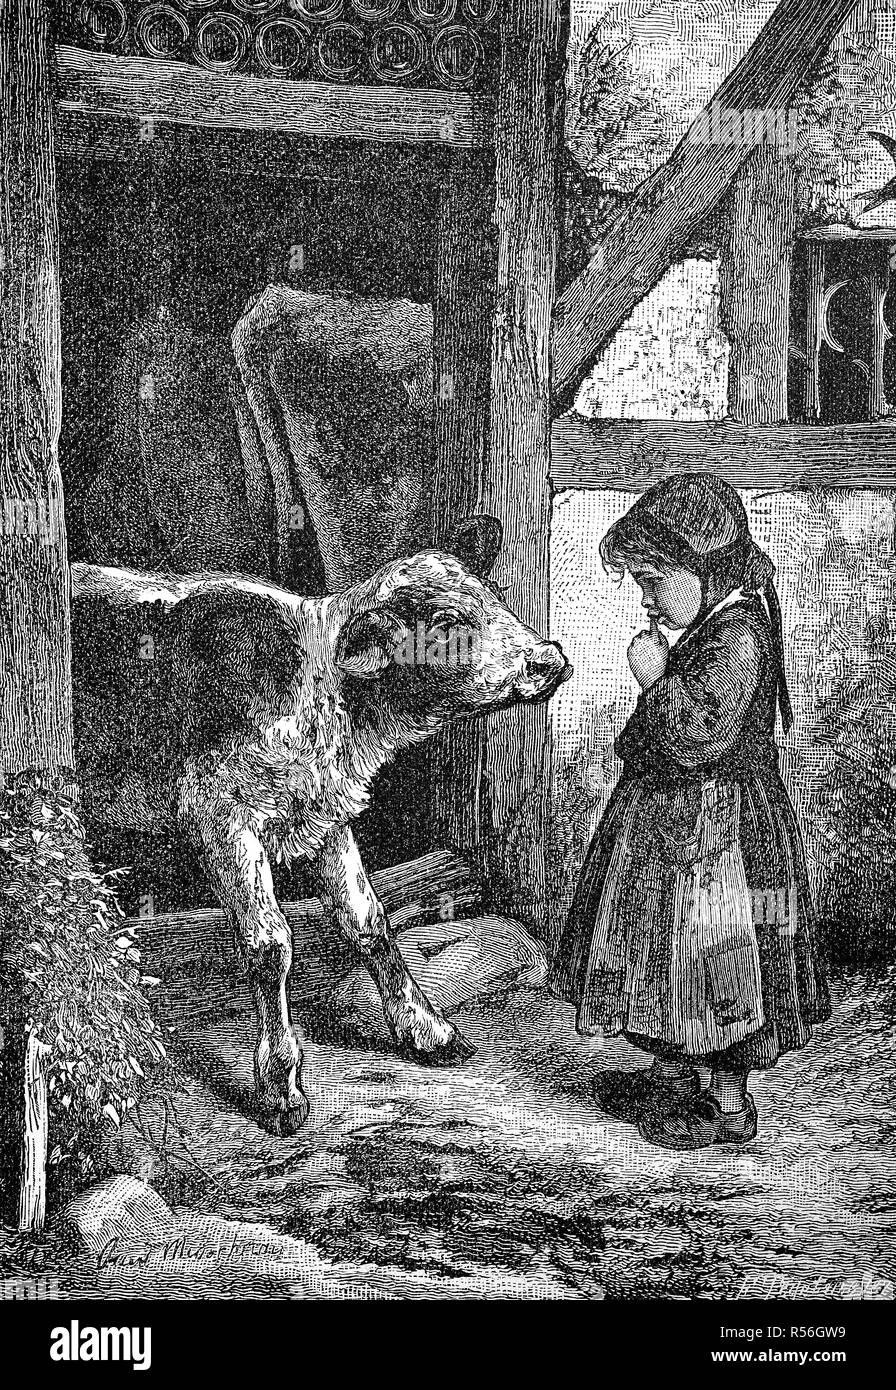 Petite fille est debout sur la ferme en face d'un veau, 1880, gravure sur bois, Allemagne Banque D'Images